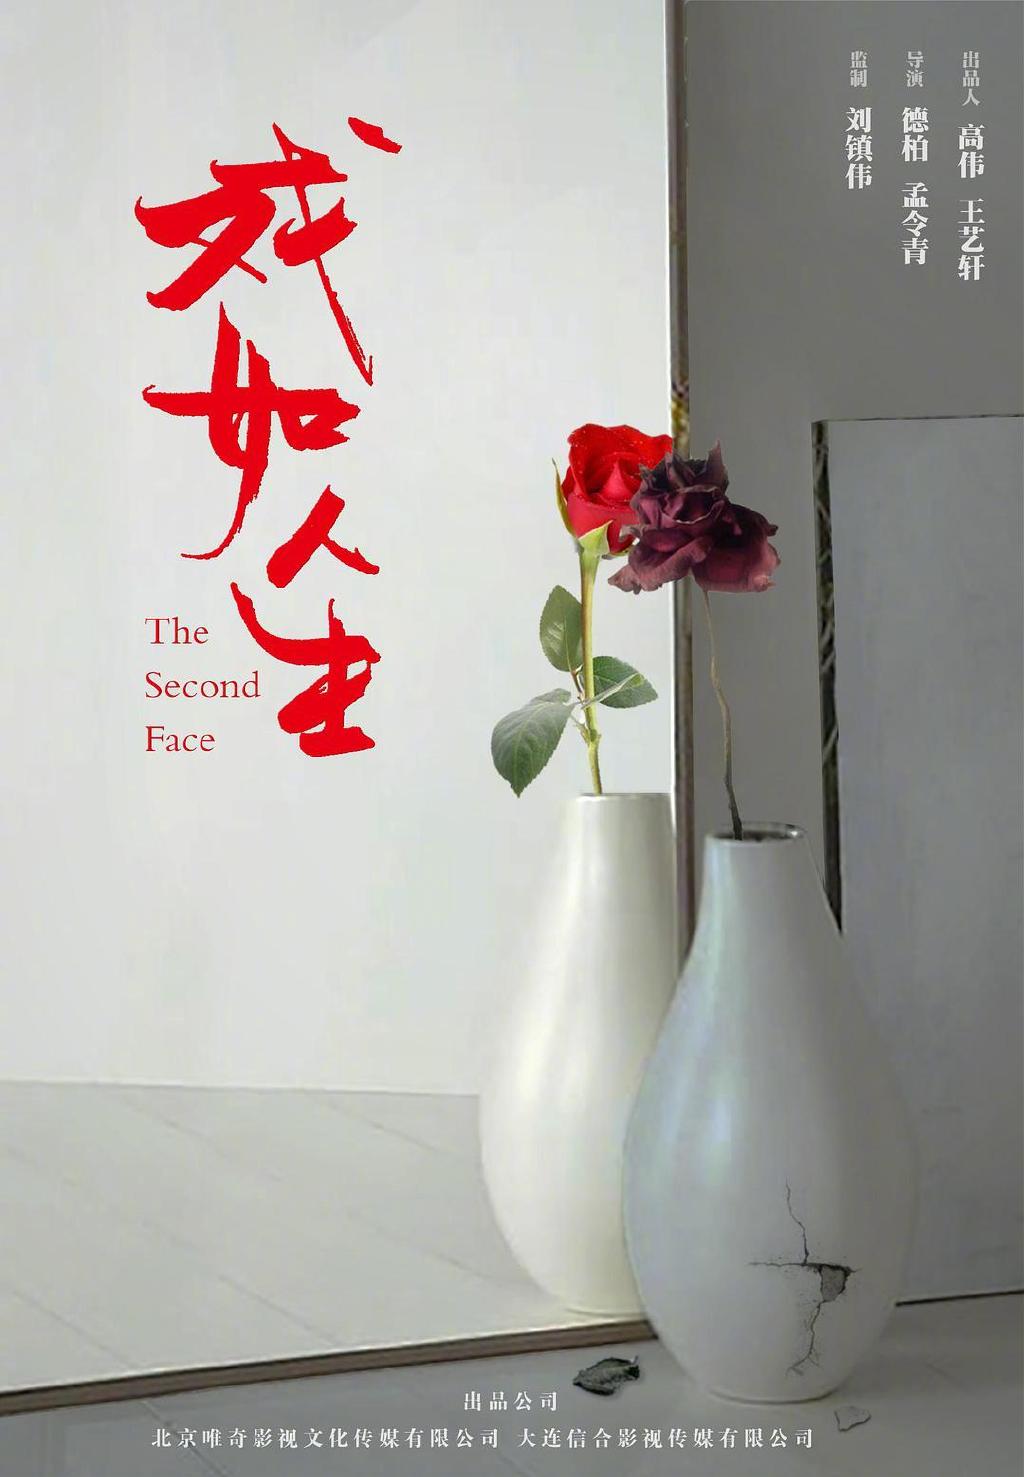 赵力+黄海：全中国牛掰的电影海报都让他两做了。-第二自然